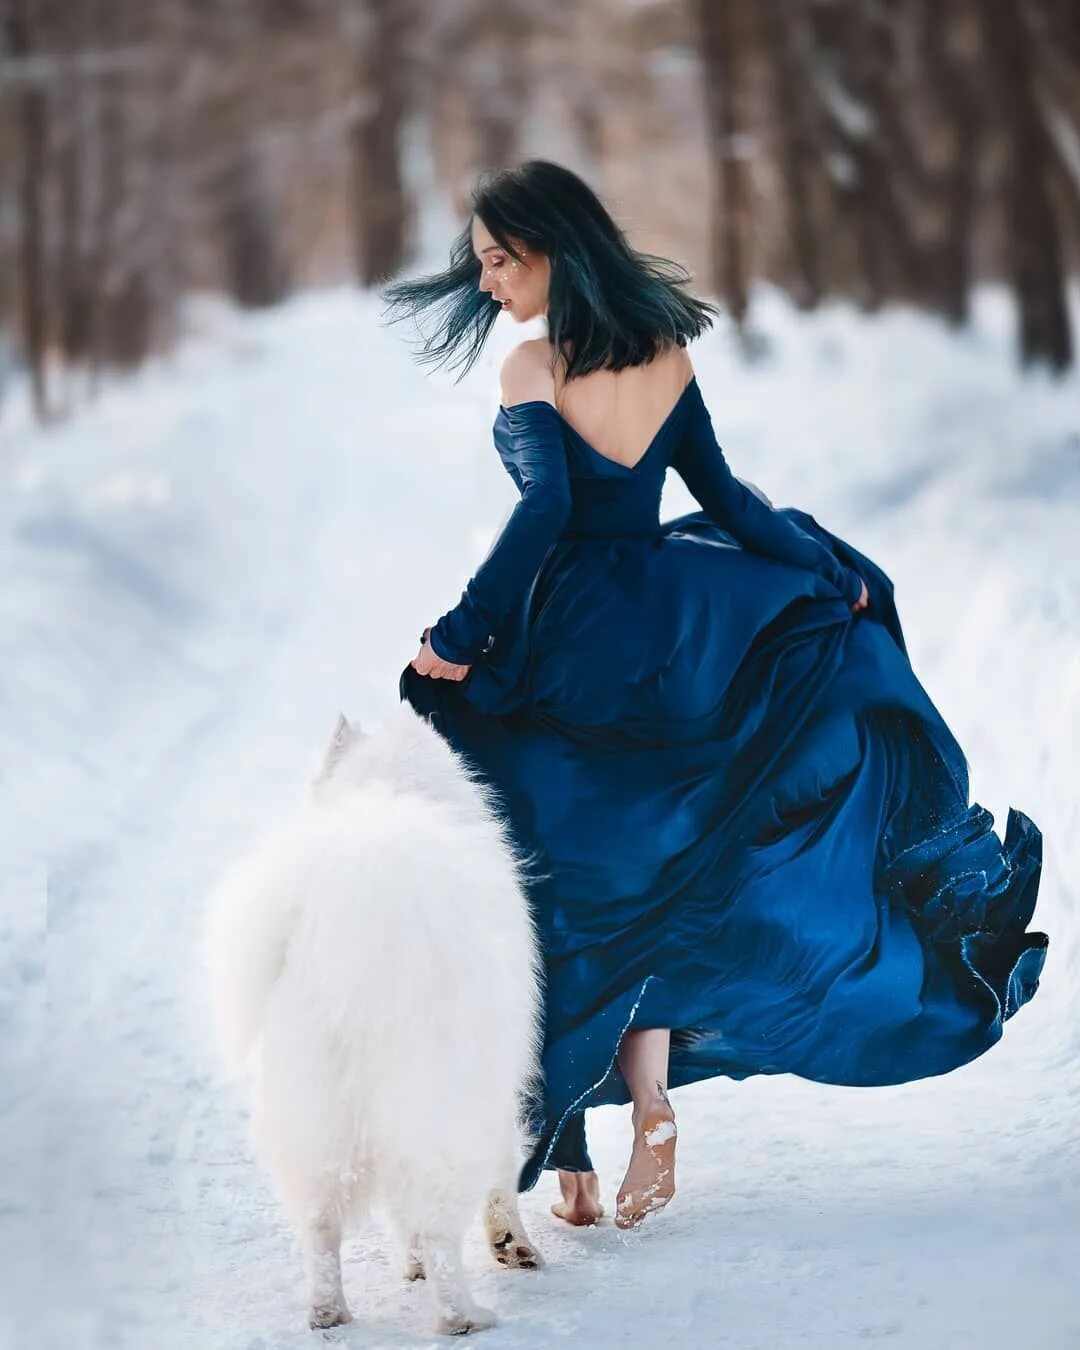 Я бегу по снегу босиком. Фотосессия зимой в платье. Девушка босиком на снегу. Девушка в платье зима. Девушка идет по снегу.